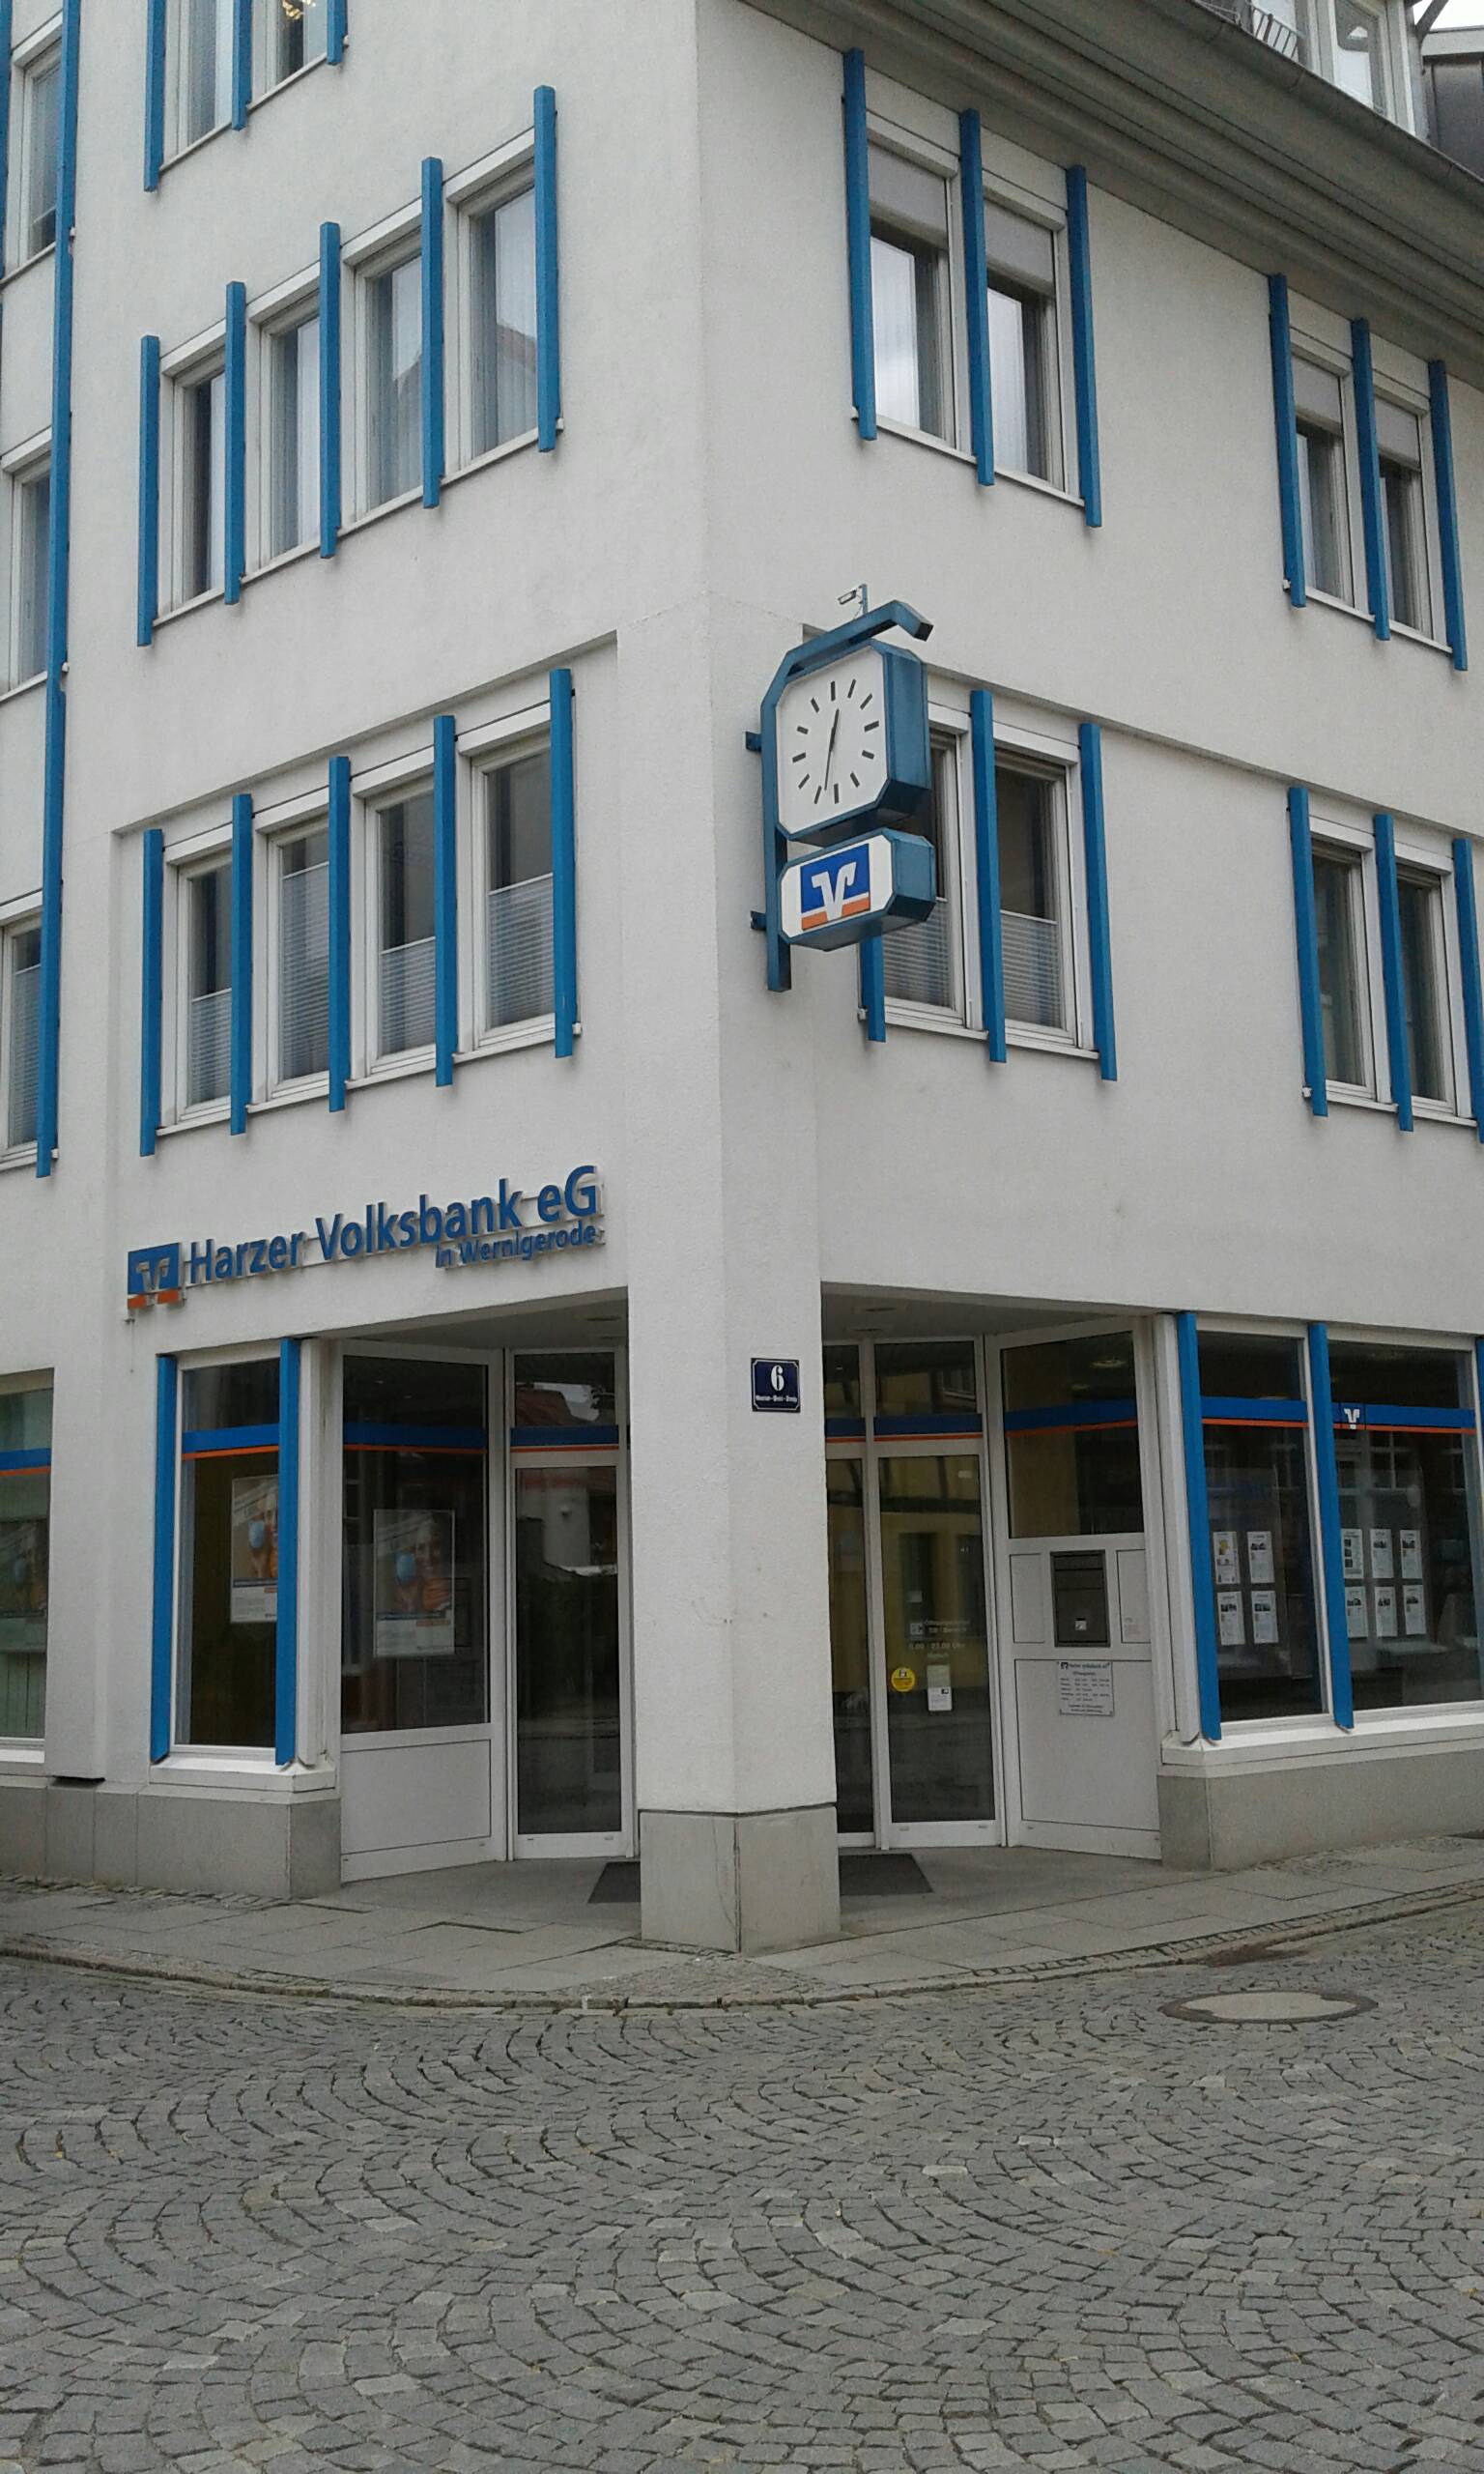 Bild 1 Harzer Volksbank eG in Wernigerode